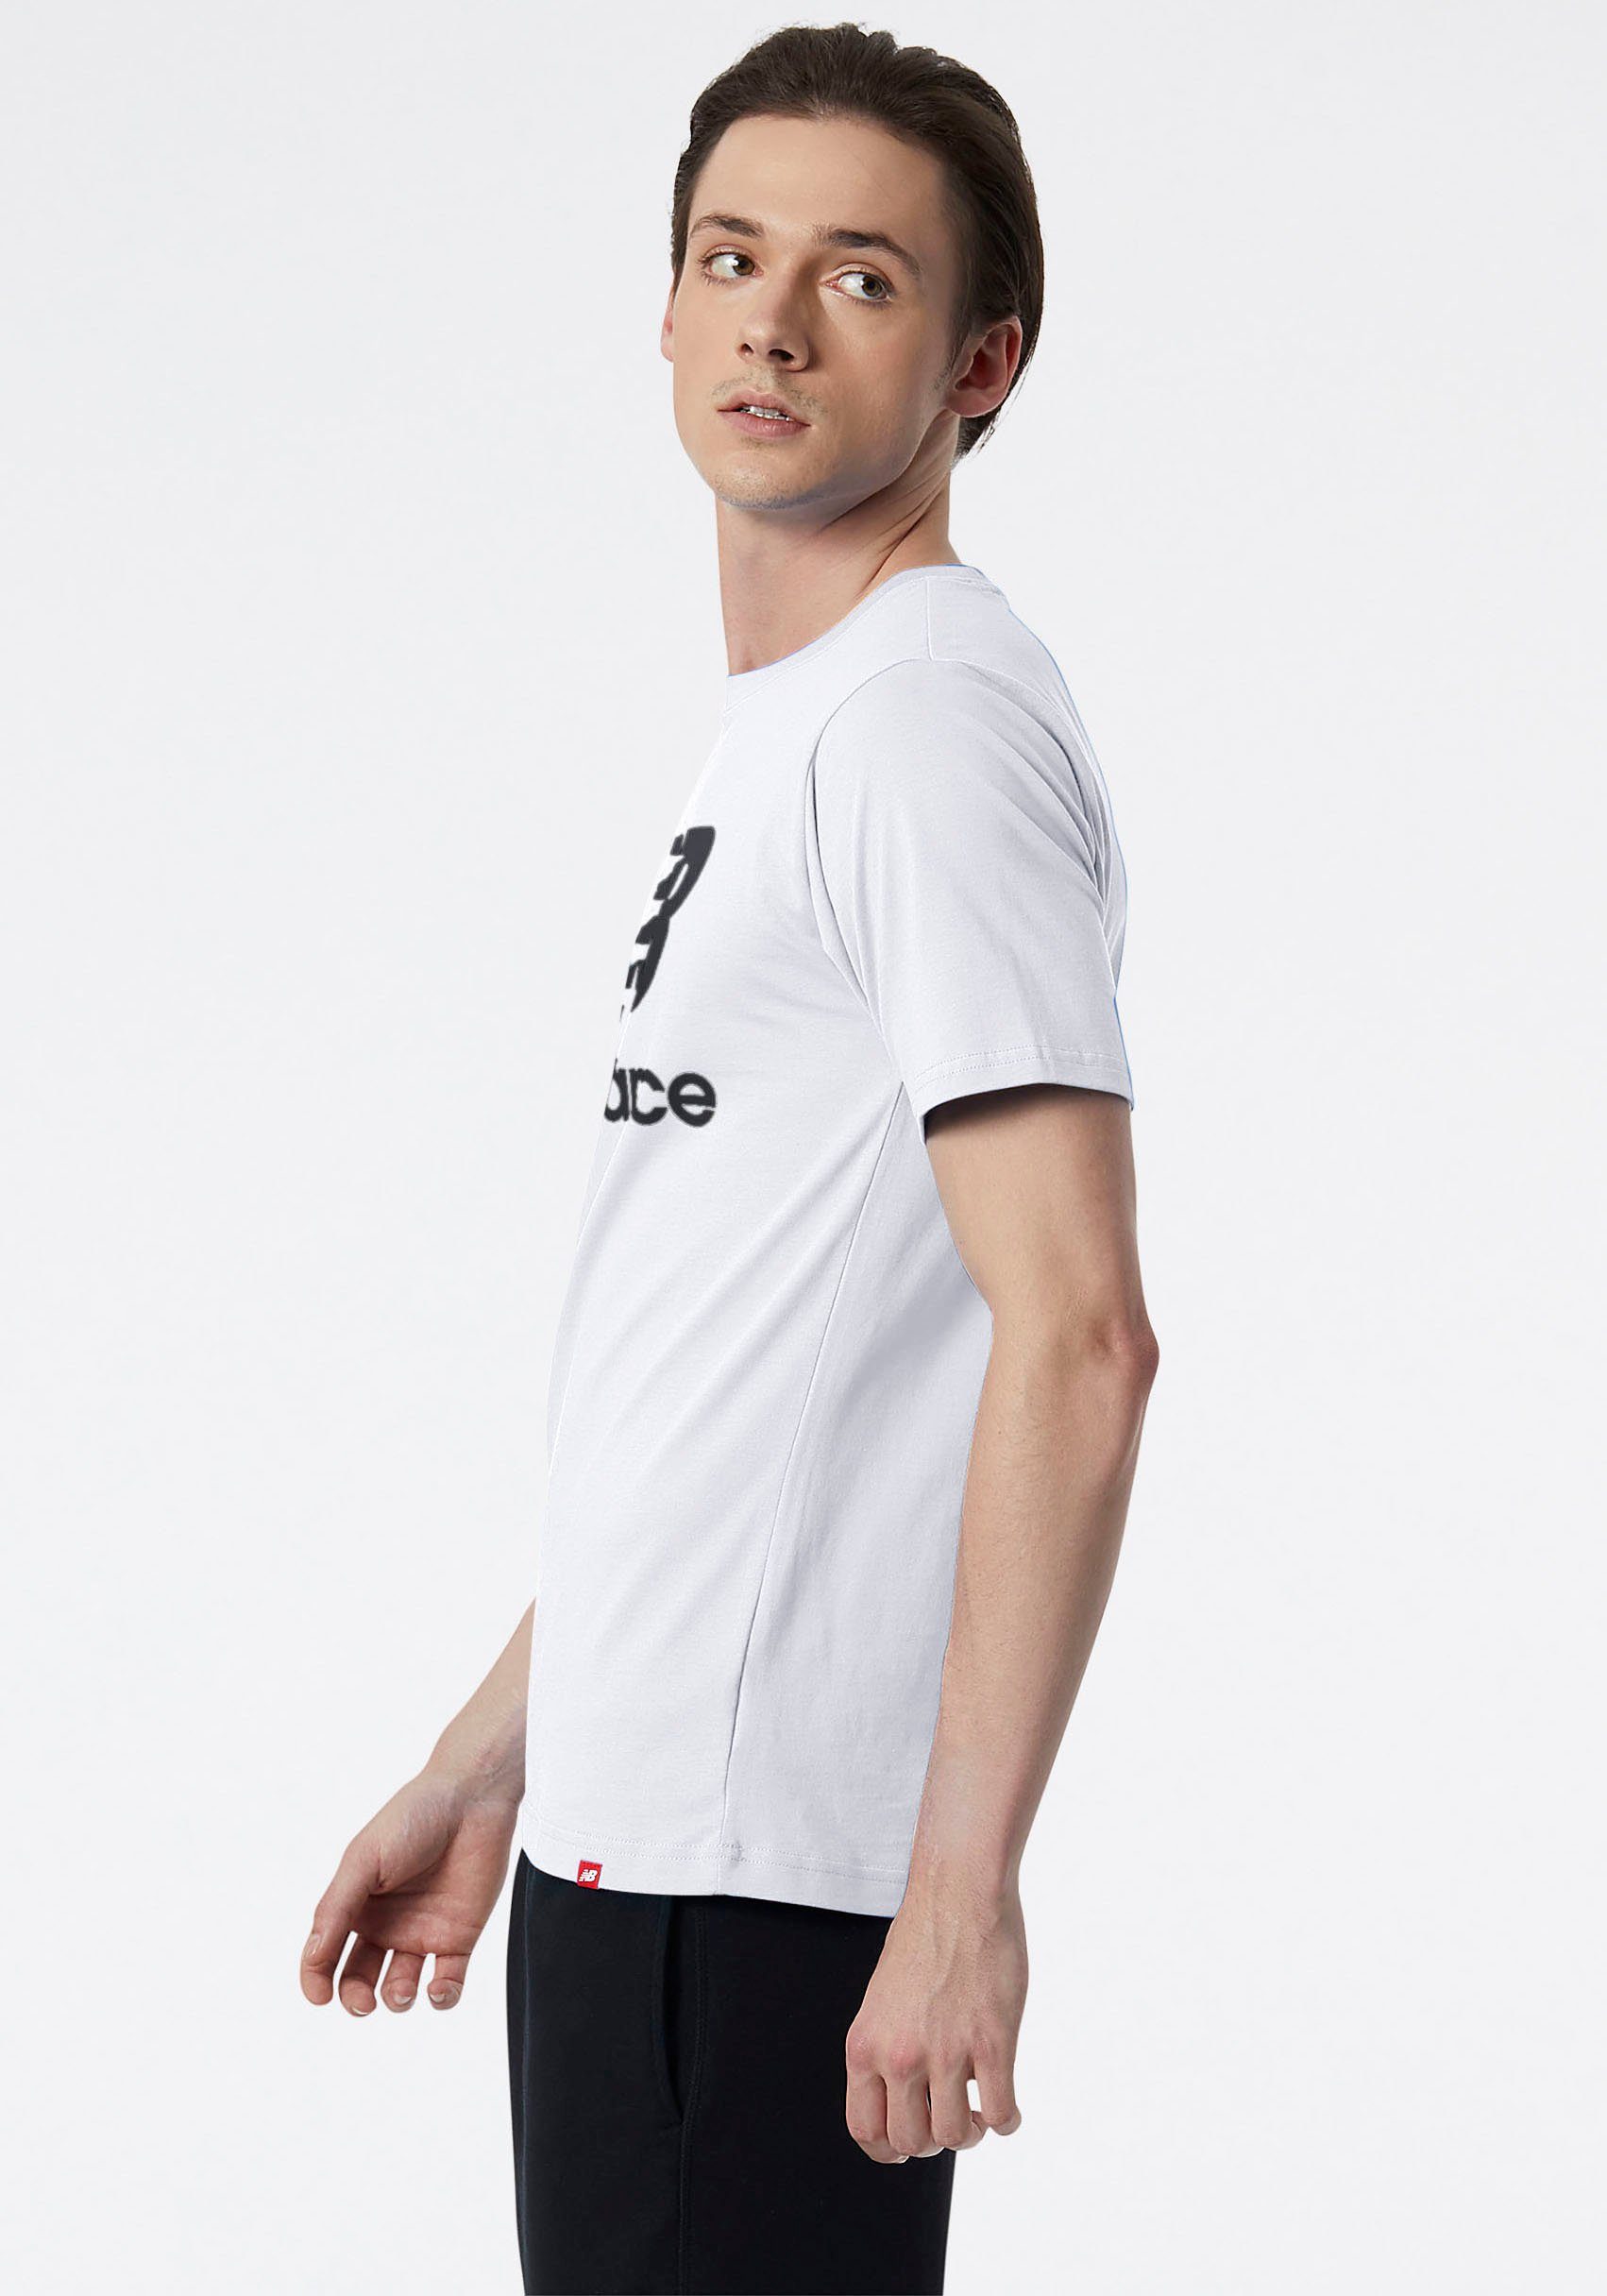 ESSENTIALS LOGO New Balance weiß STACKED T-SHIRT NB T-Shirt